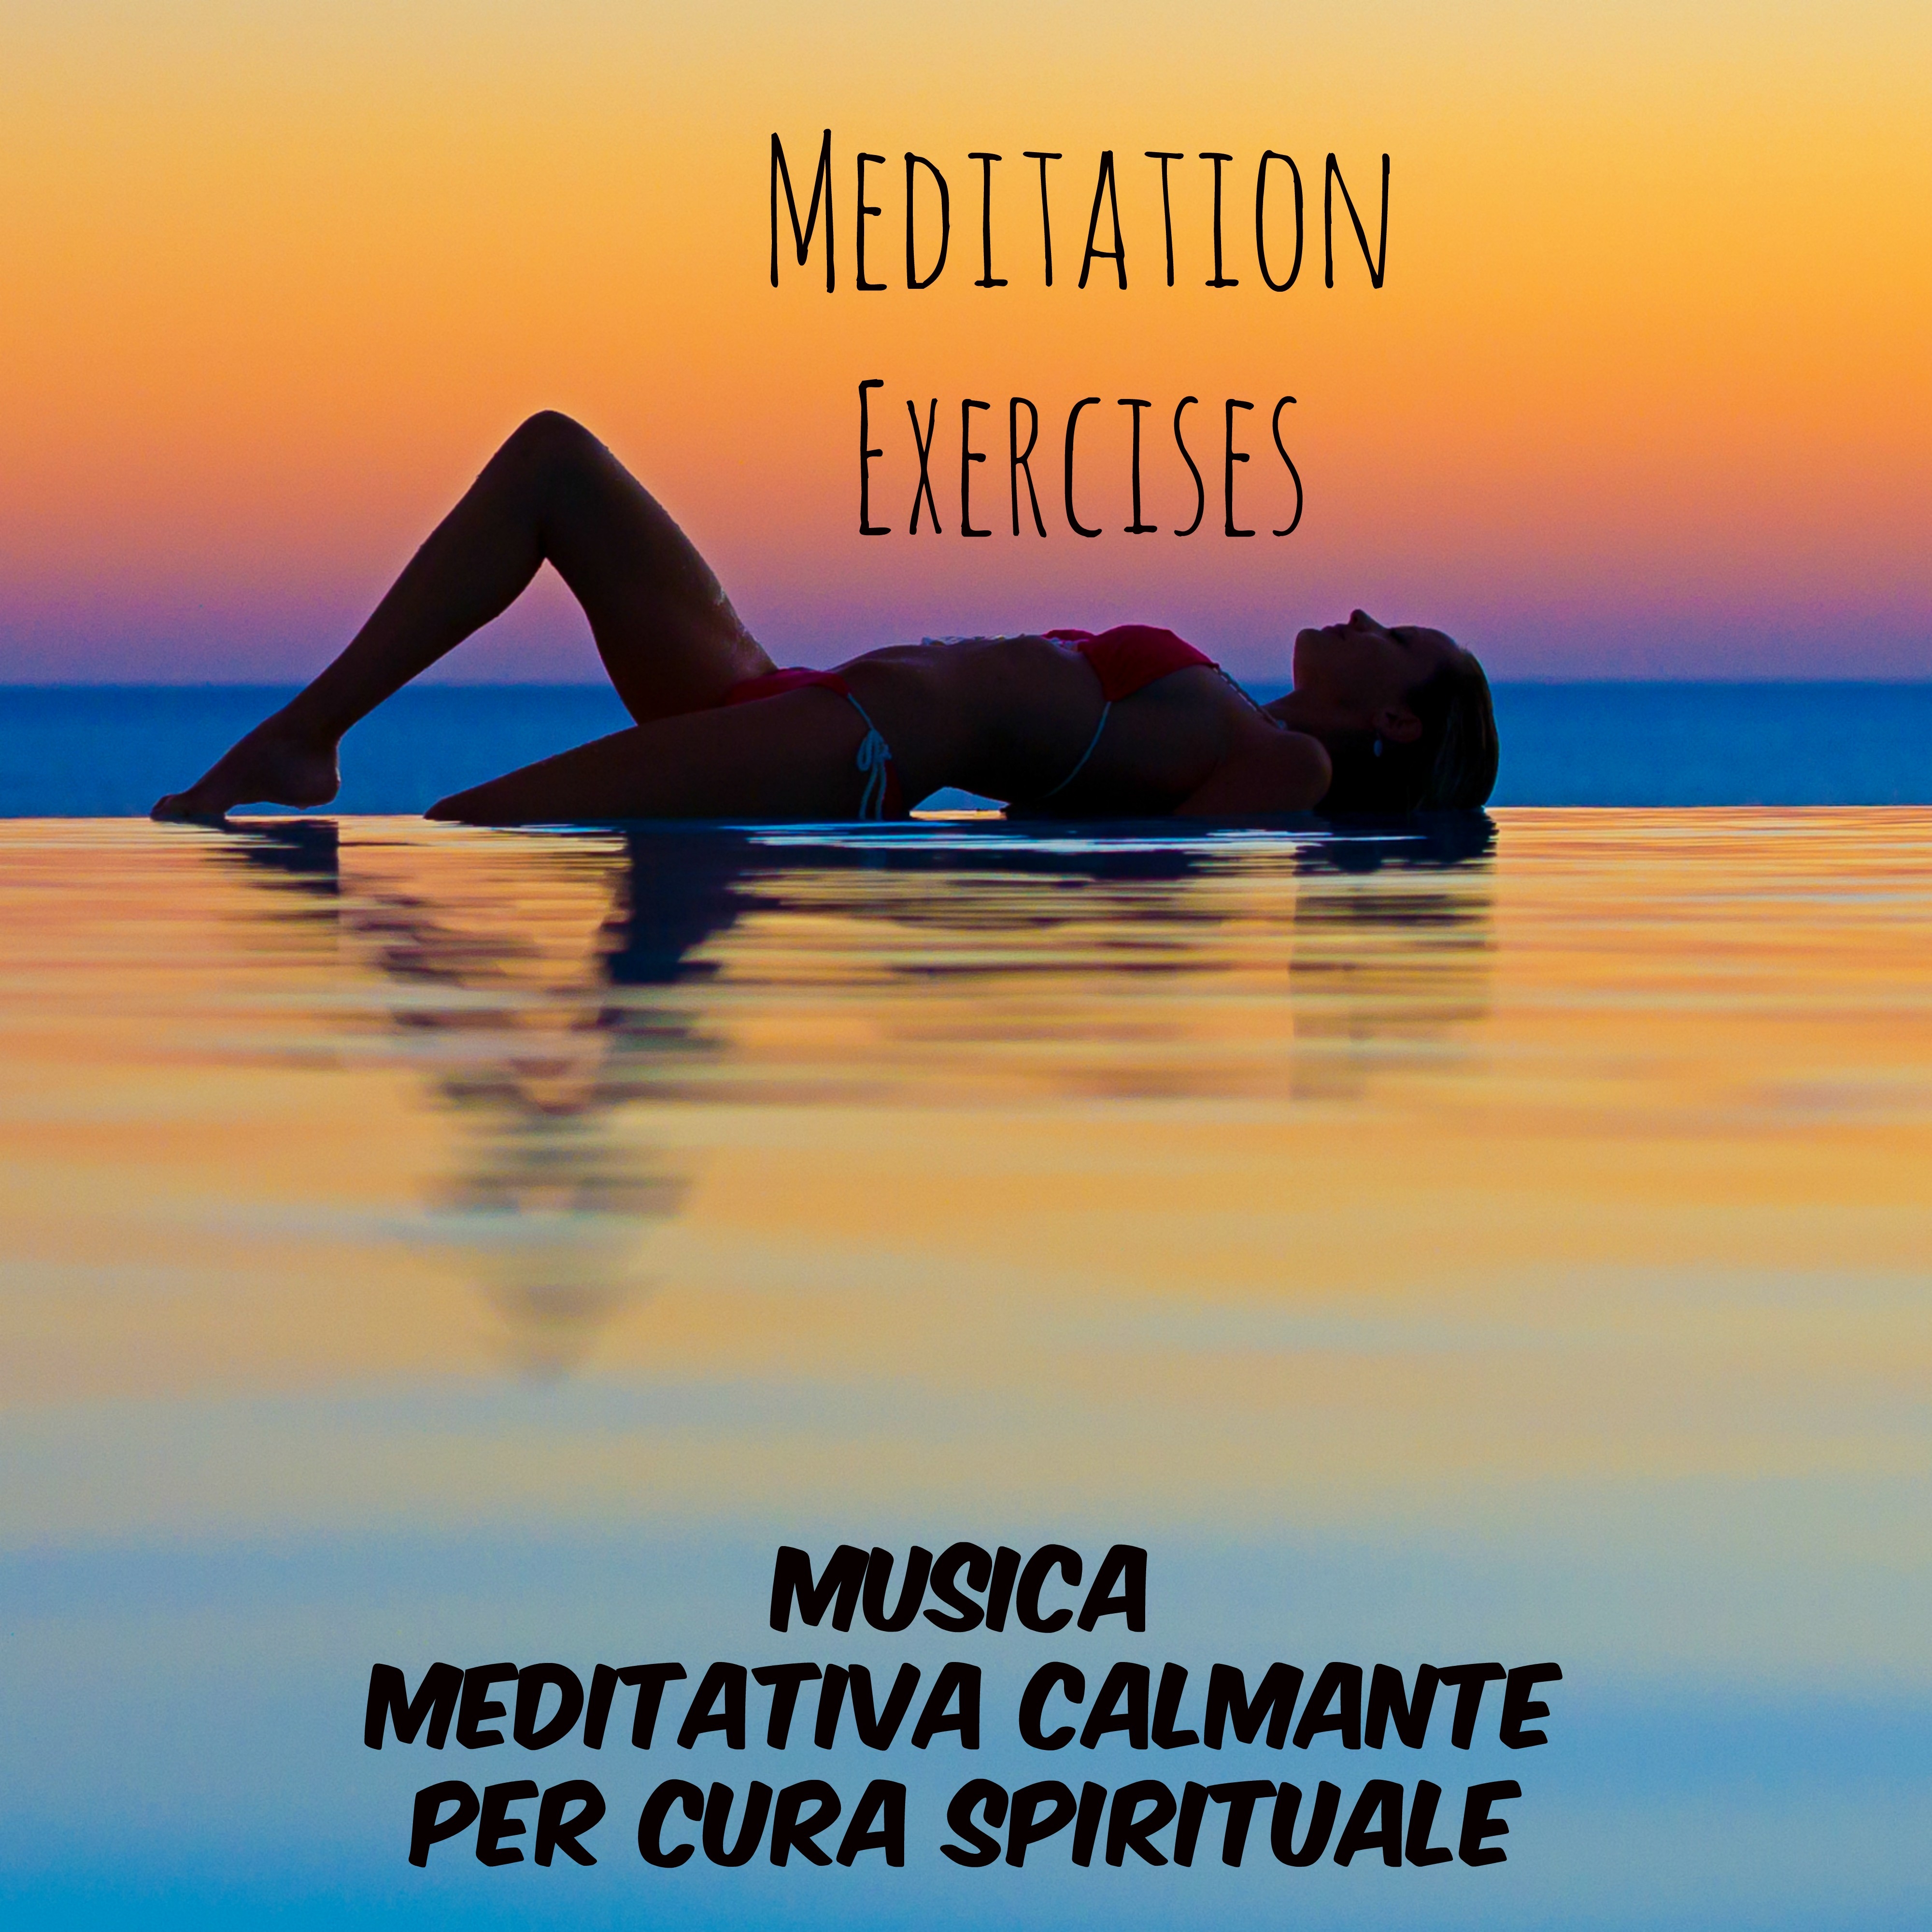 Meditation Exercises - Musica Meditativa Calmante per Cura Spirituale Migliorare la Concentrazione Benessere e Ridurre lo Stress